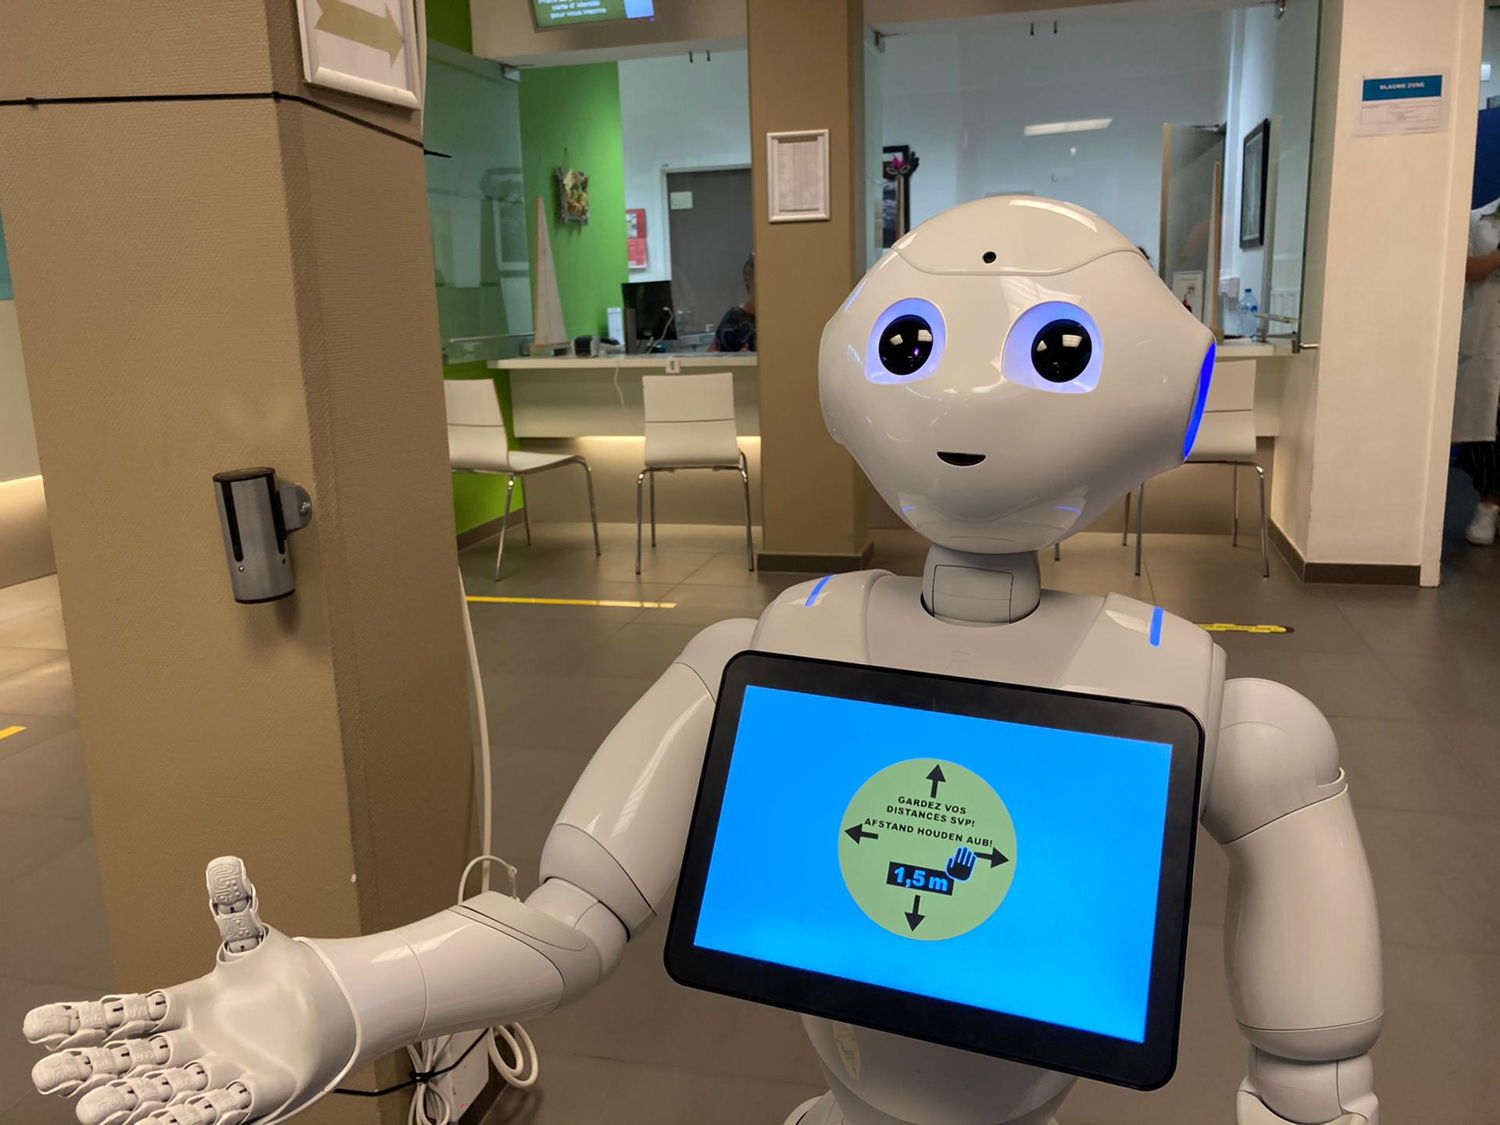 Le robot Pepper rappelle aux patients les règles qu’ils doivent respecter à l’hôpital pour faire en sorte que l’hôpital reste un environnement sûr pour les patients et le personnel hospitalier